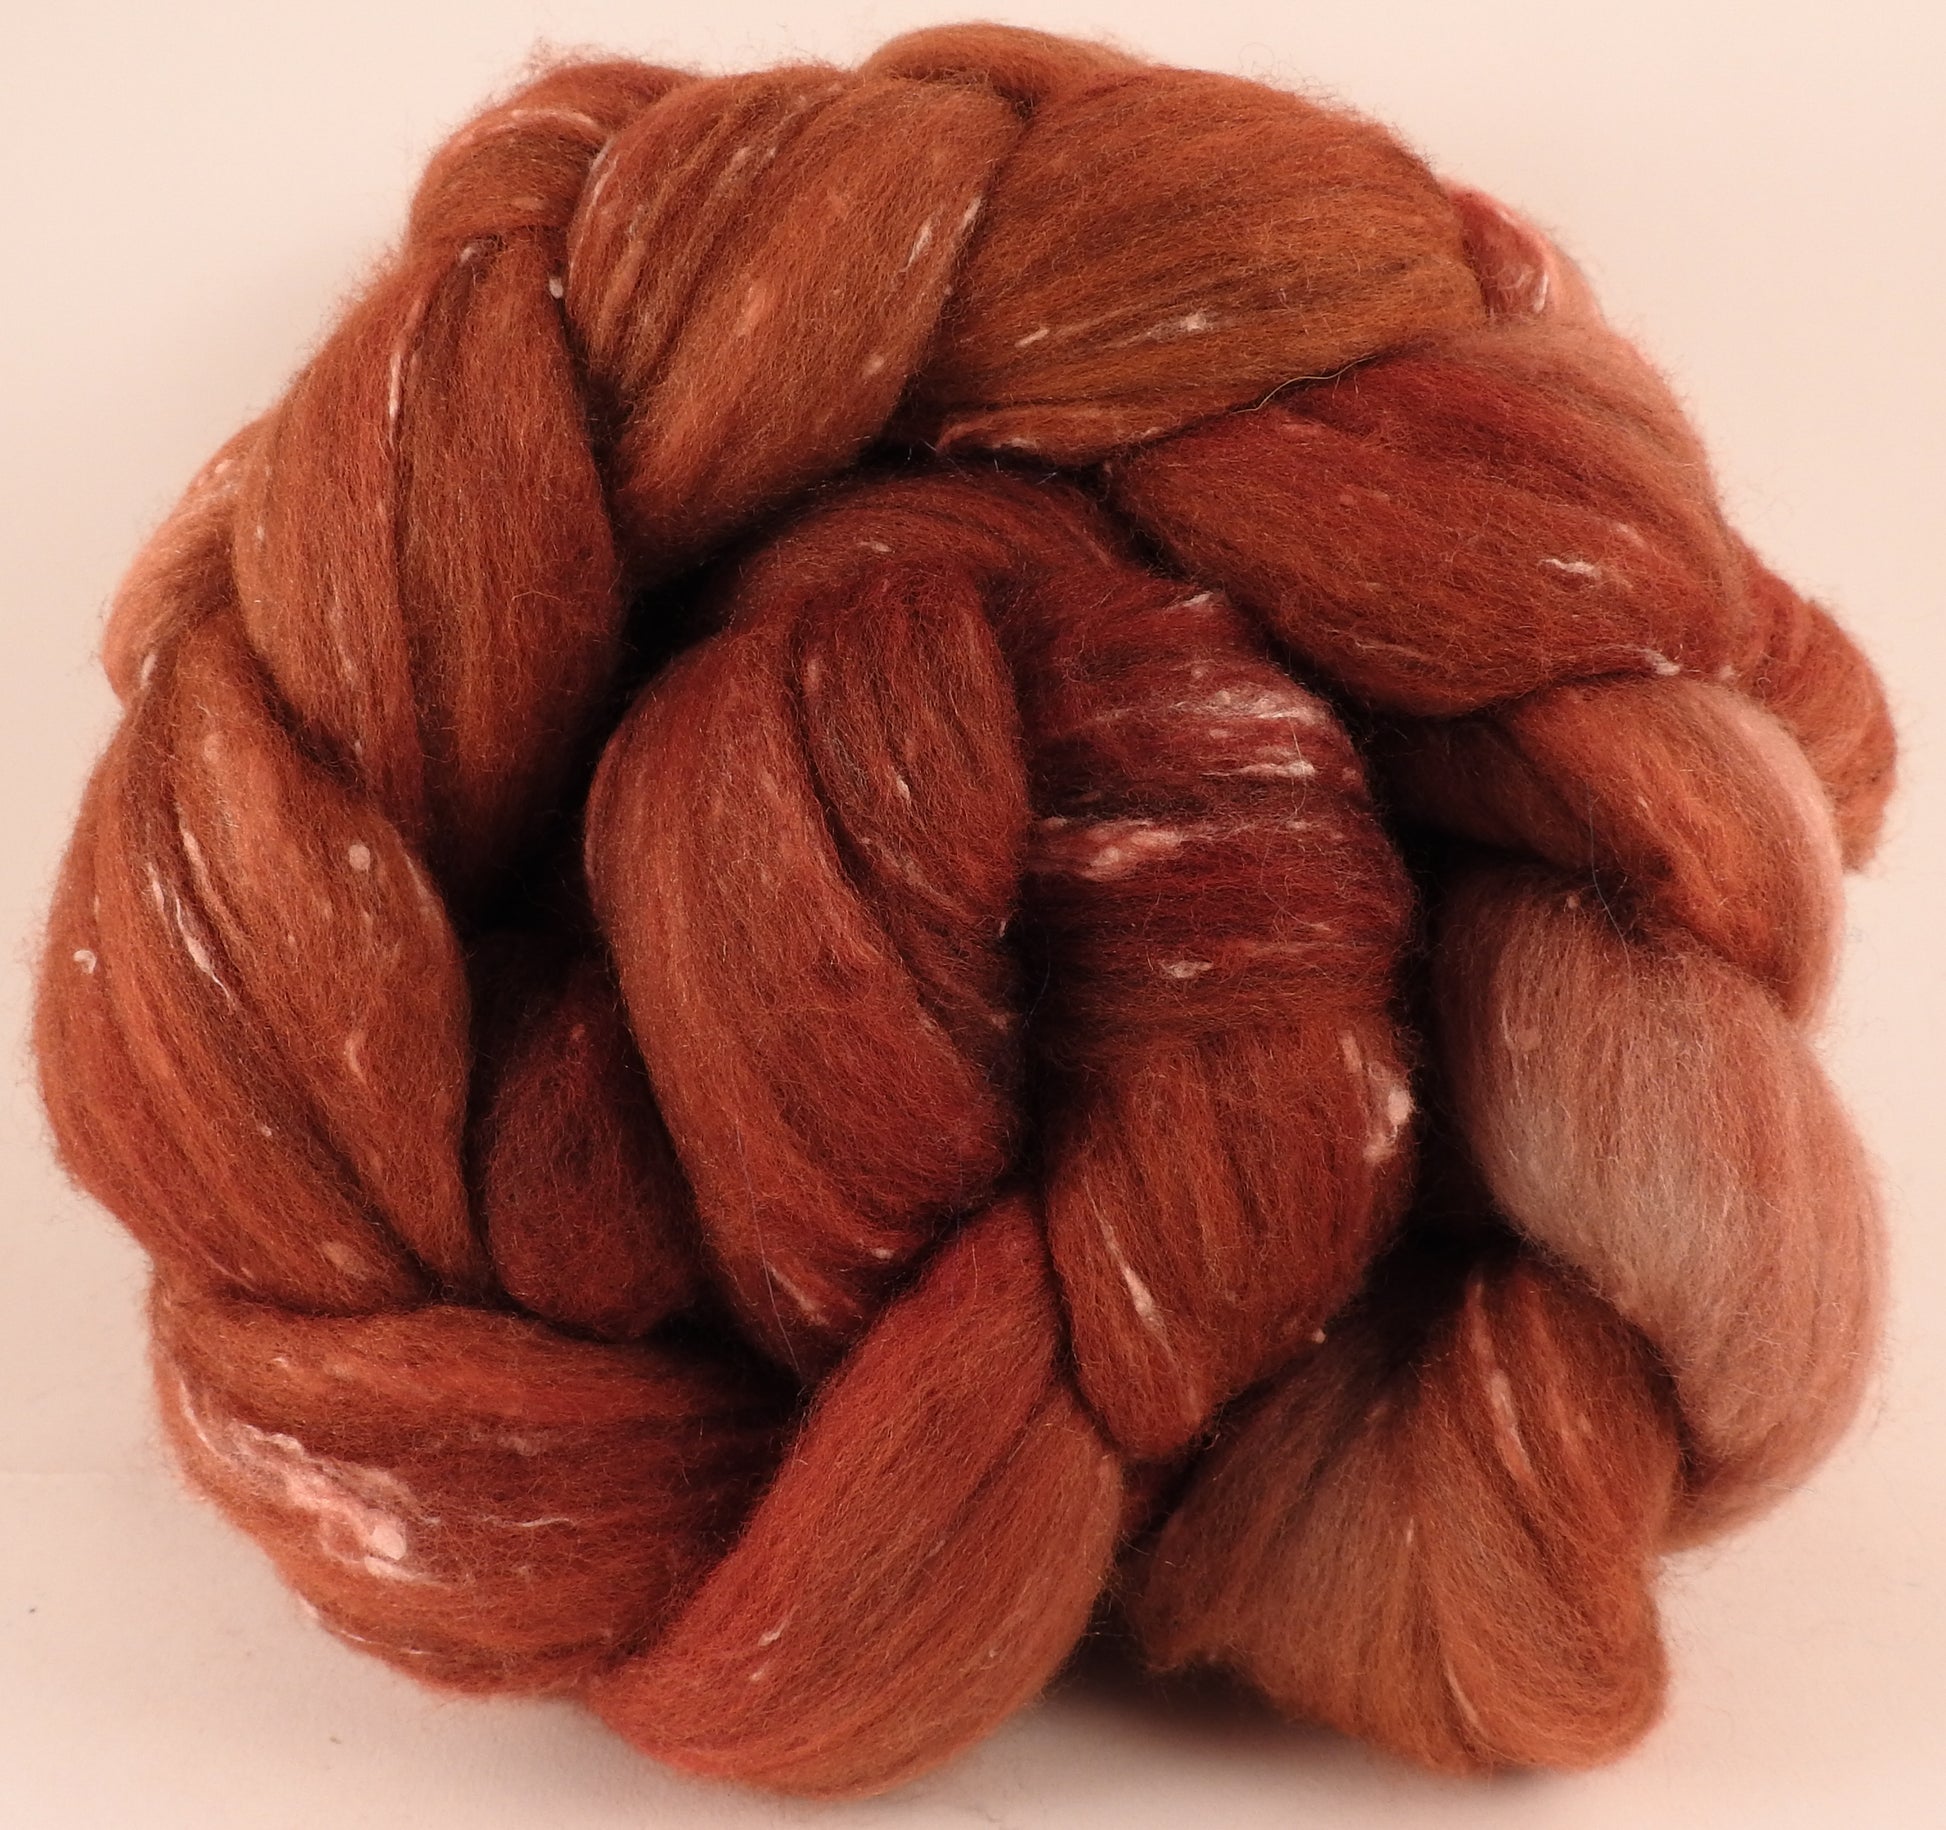 Batt in a Braid #42- Russet -(5.6 oz)  Polwarth/ Tweed Blend / Peduncle&Tussah Silk( 50/25/25) - Inglenook Fibers